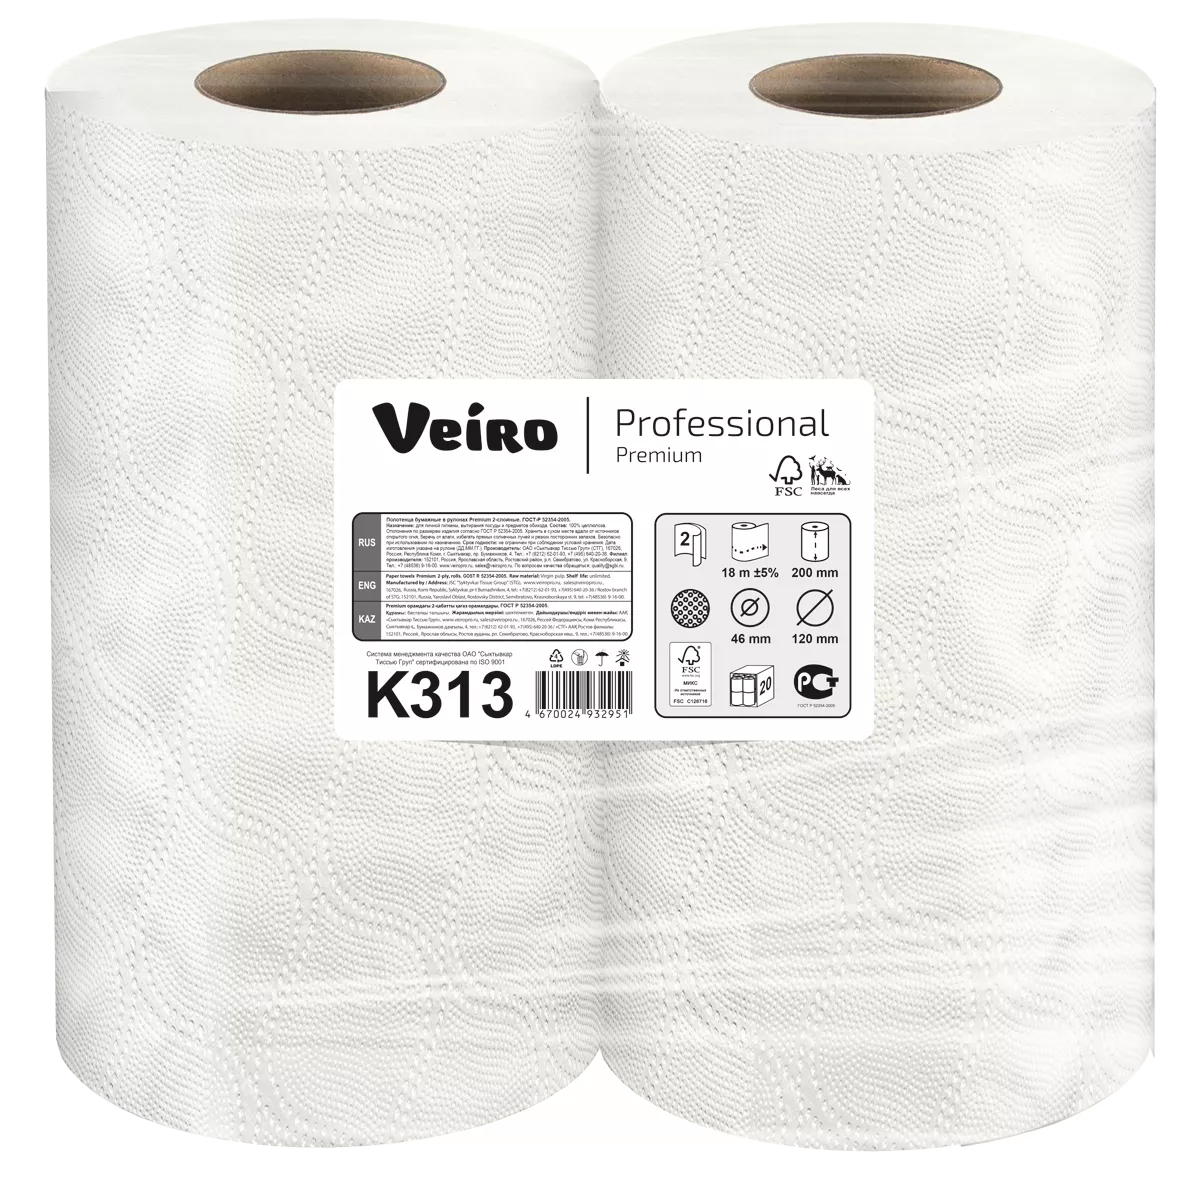 Полотенца бумажные длина рулона. Veiro professional Premium k313. Туалетная бумага Veiro professional Premium t309,. Полотенца бумажные Veiro professional. Veiro professional t11200.